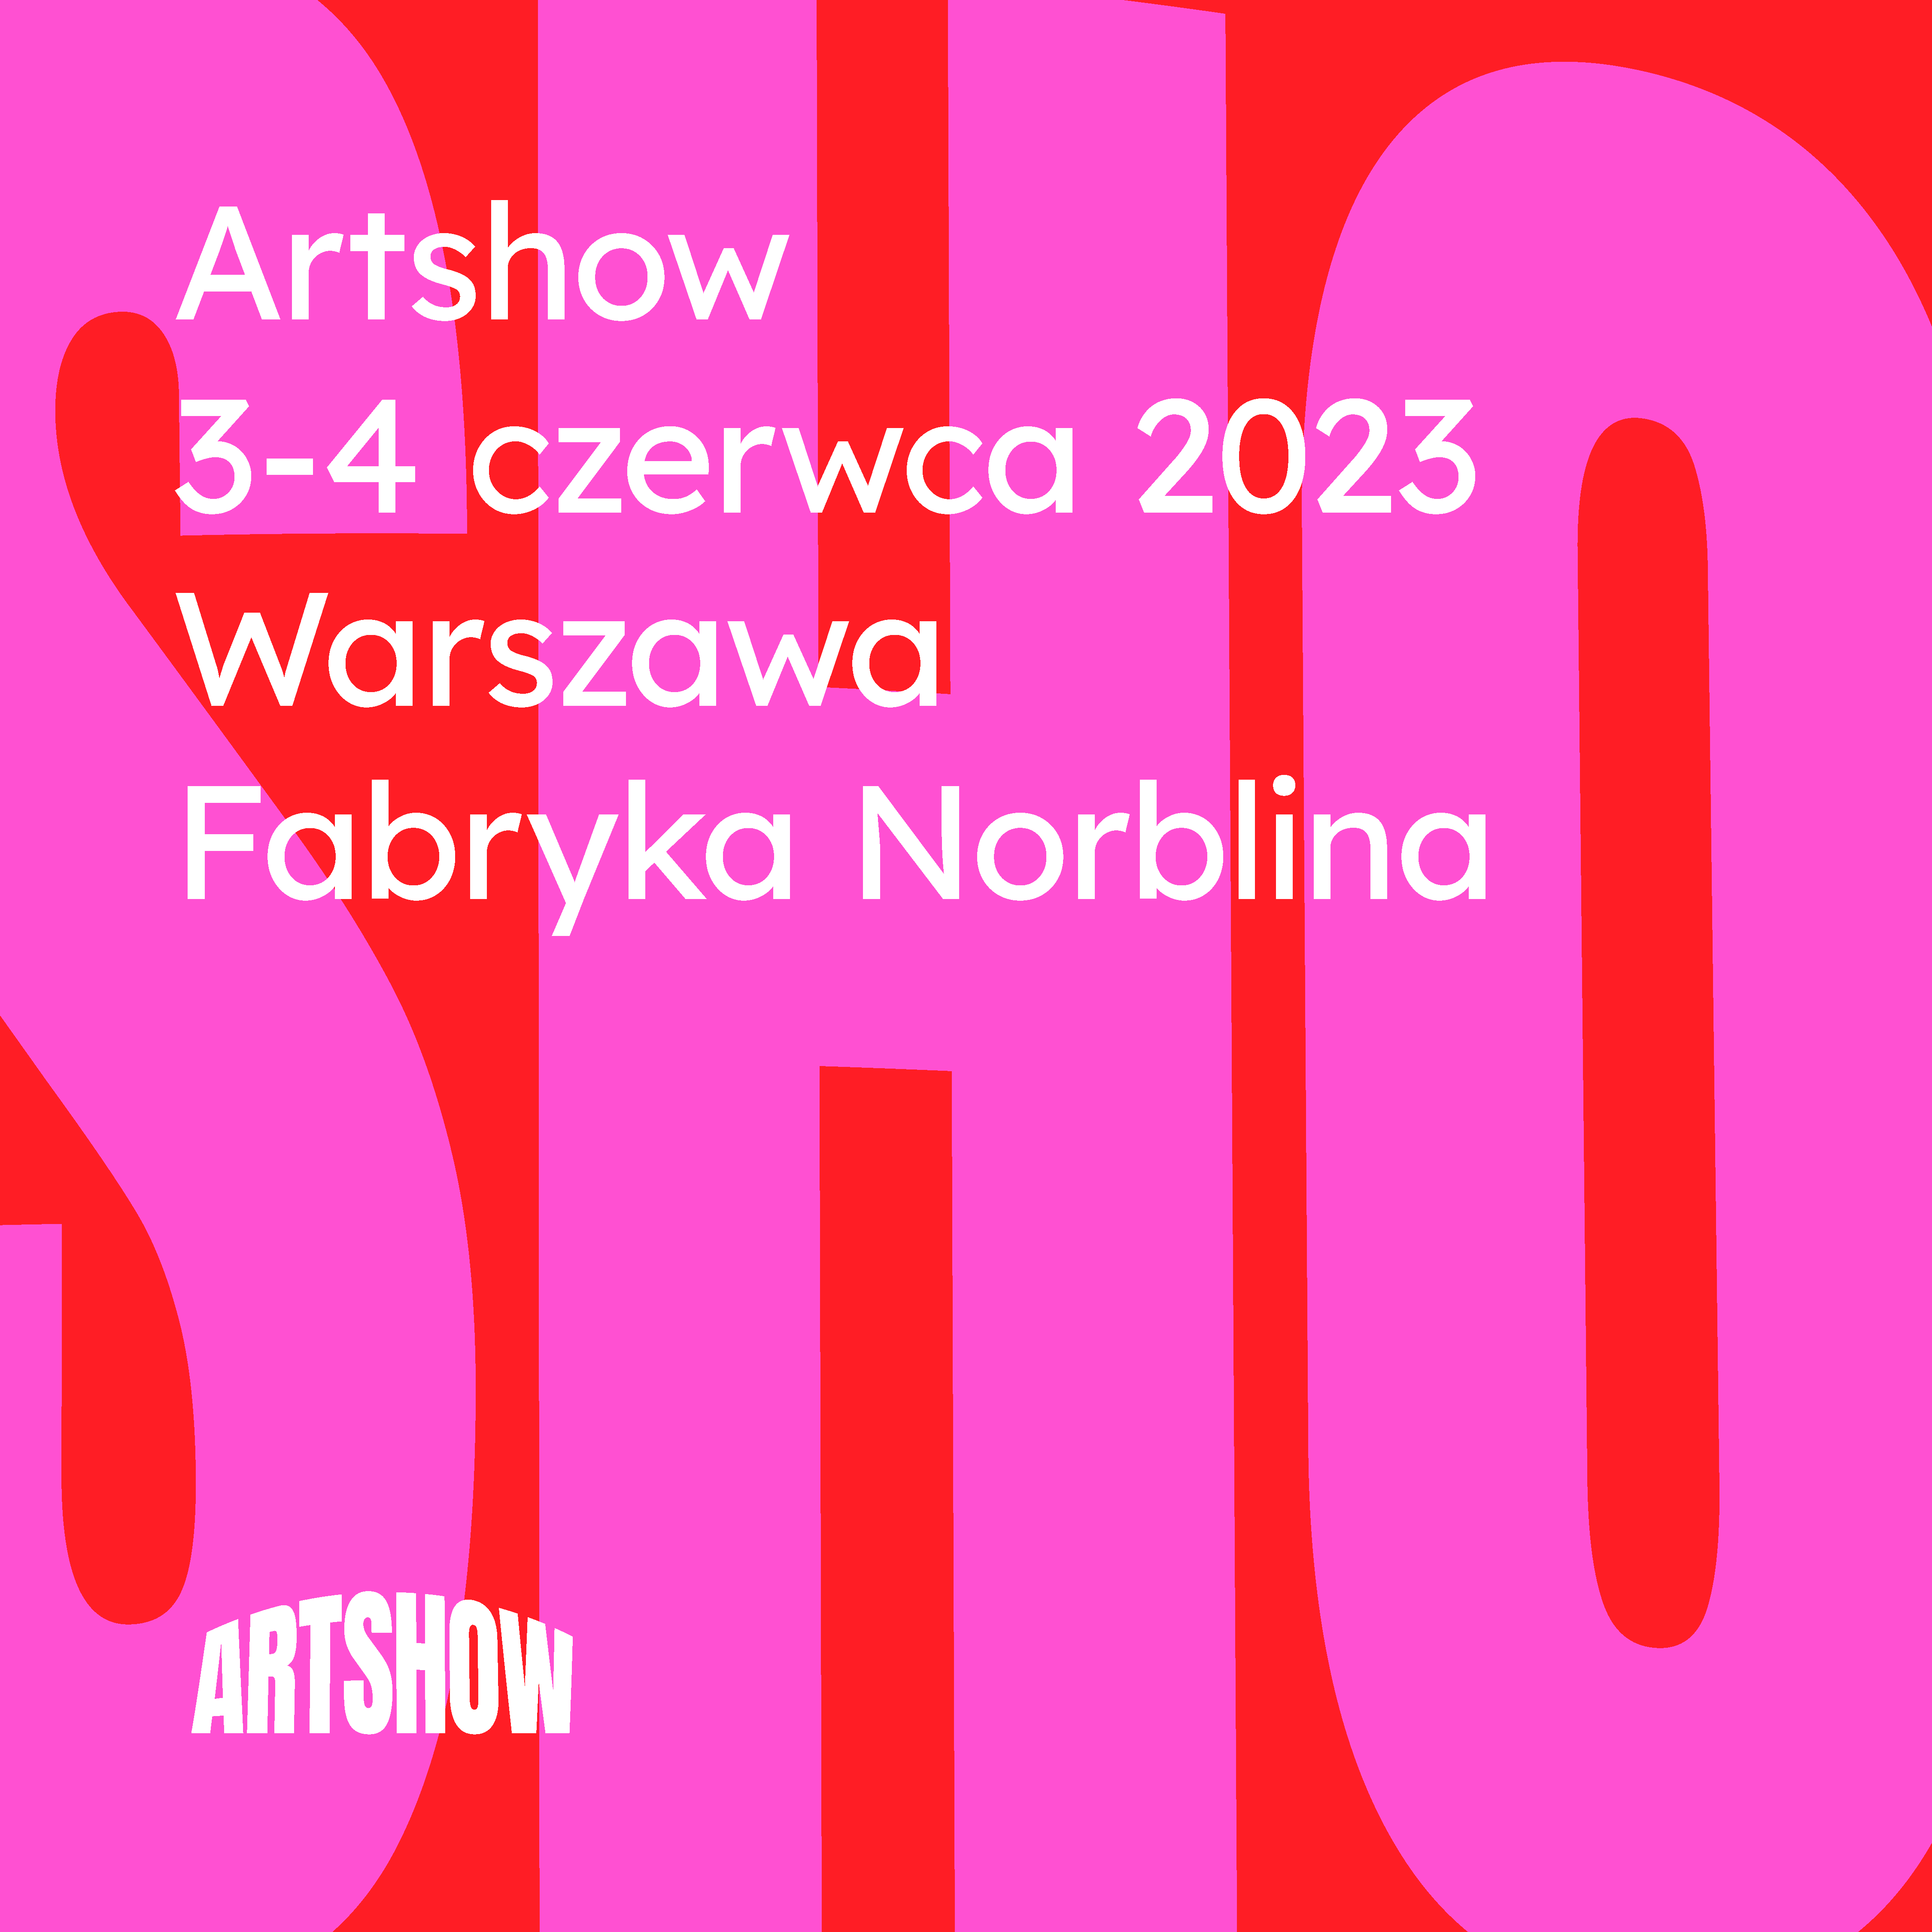 Artshow po raz pierwszy w Polsce